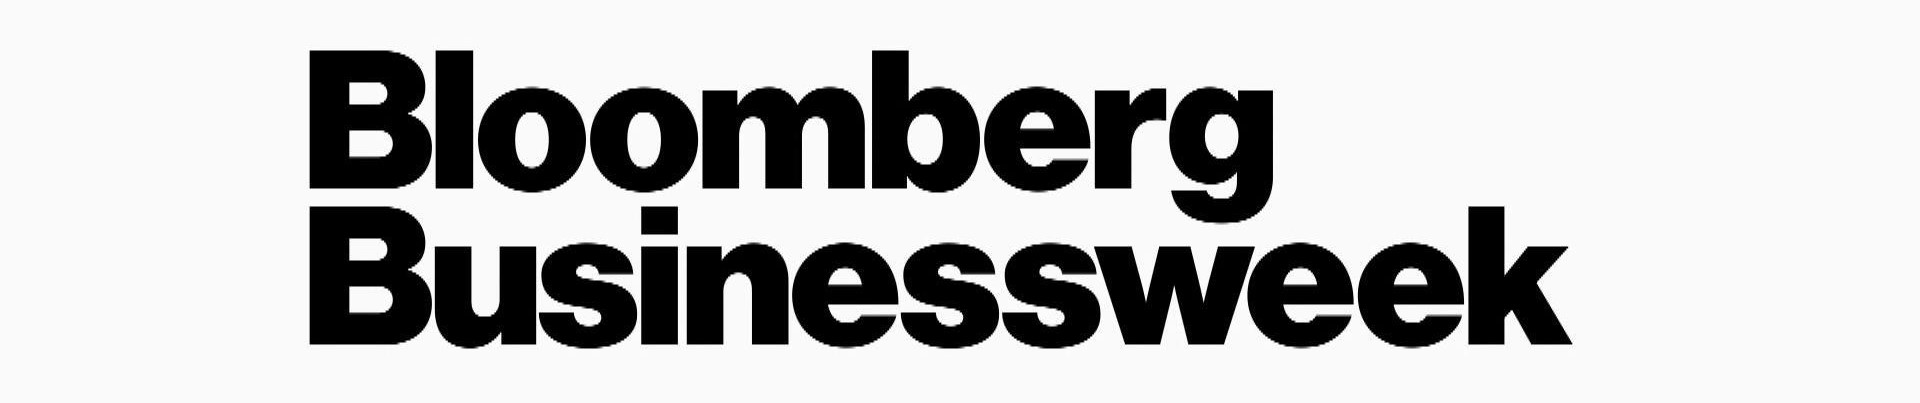 Bloomberg Businessweek, haftalık ekonomi dergisidir. Merkezi New York'da bulunmaktadır.